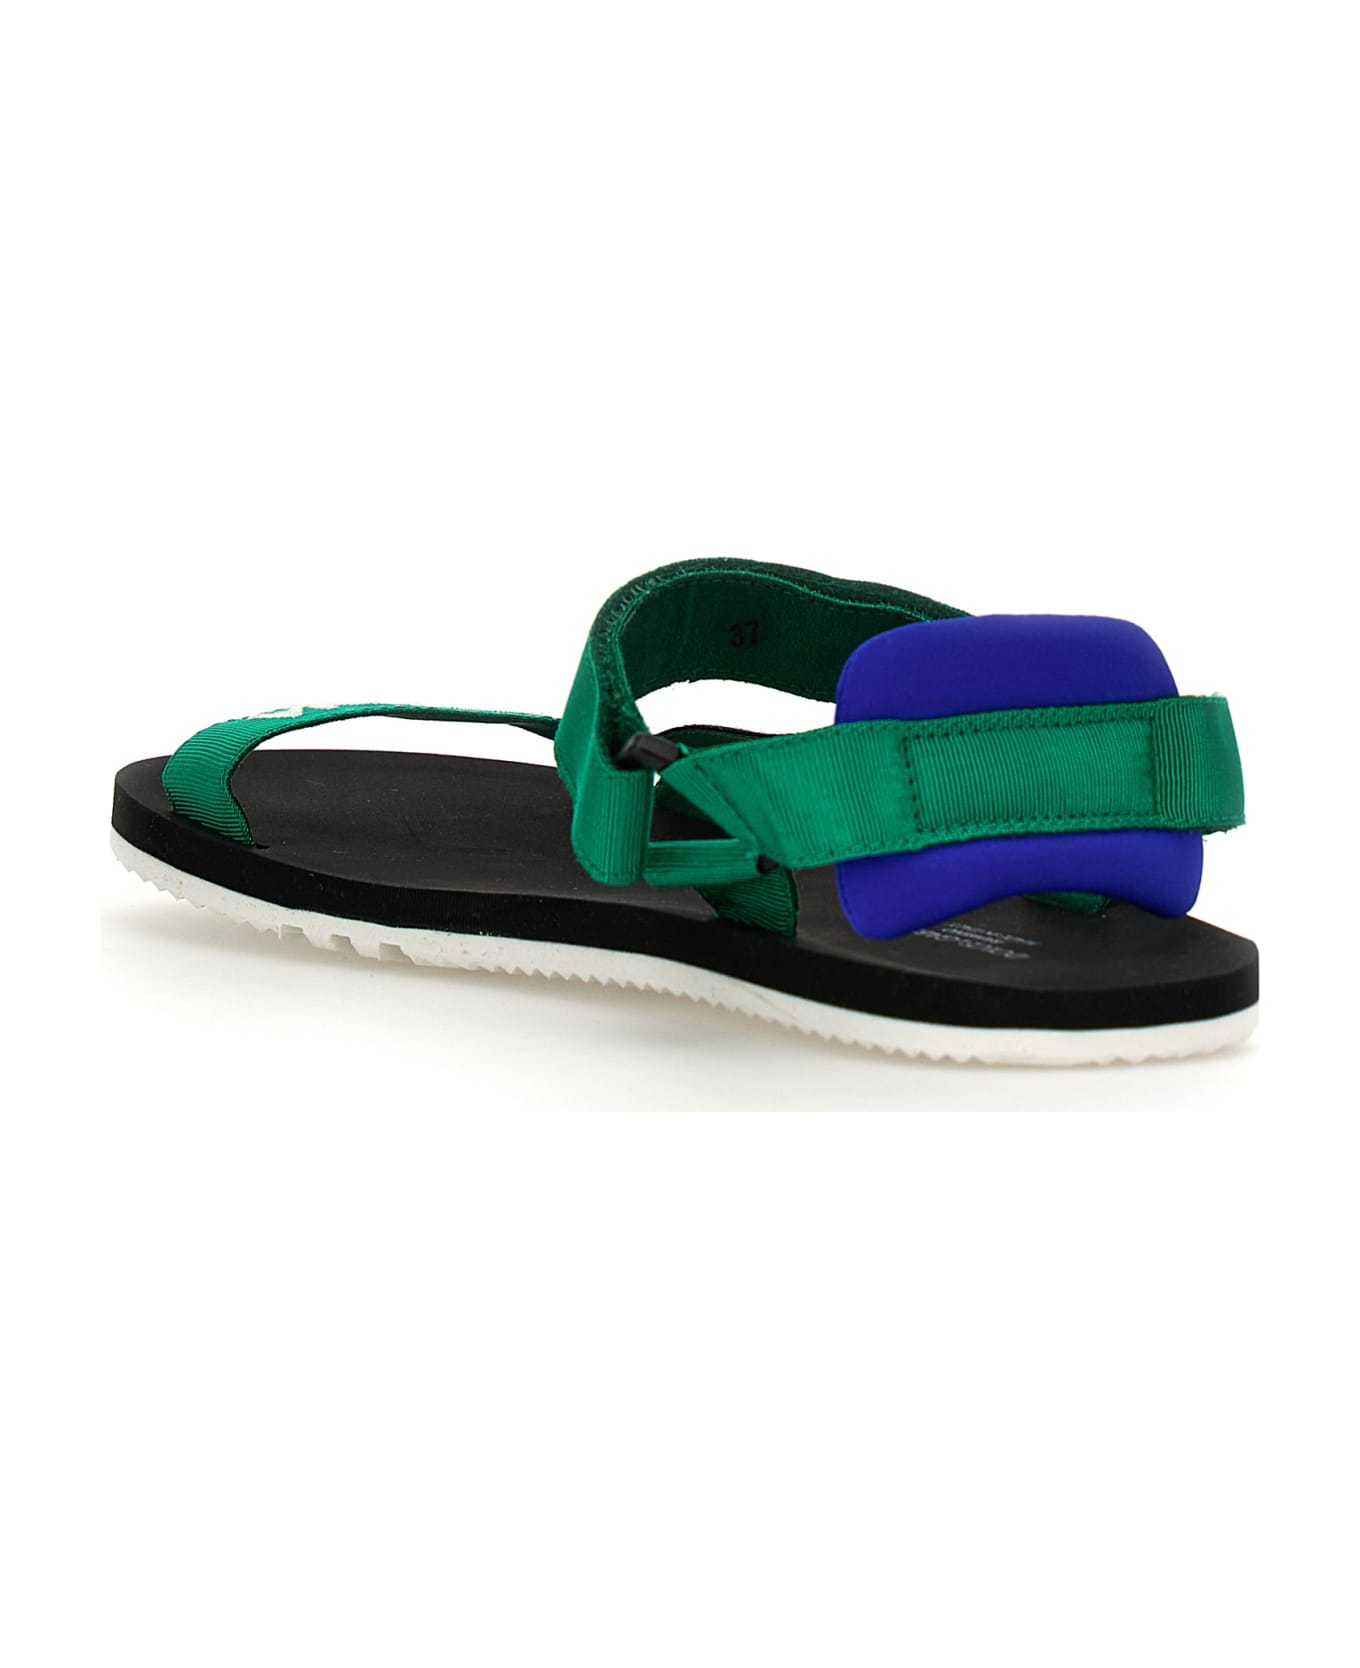 Dolce & Gabbana Logo Sandals - Green シューズ